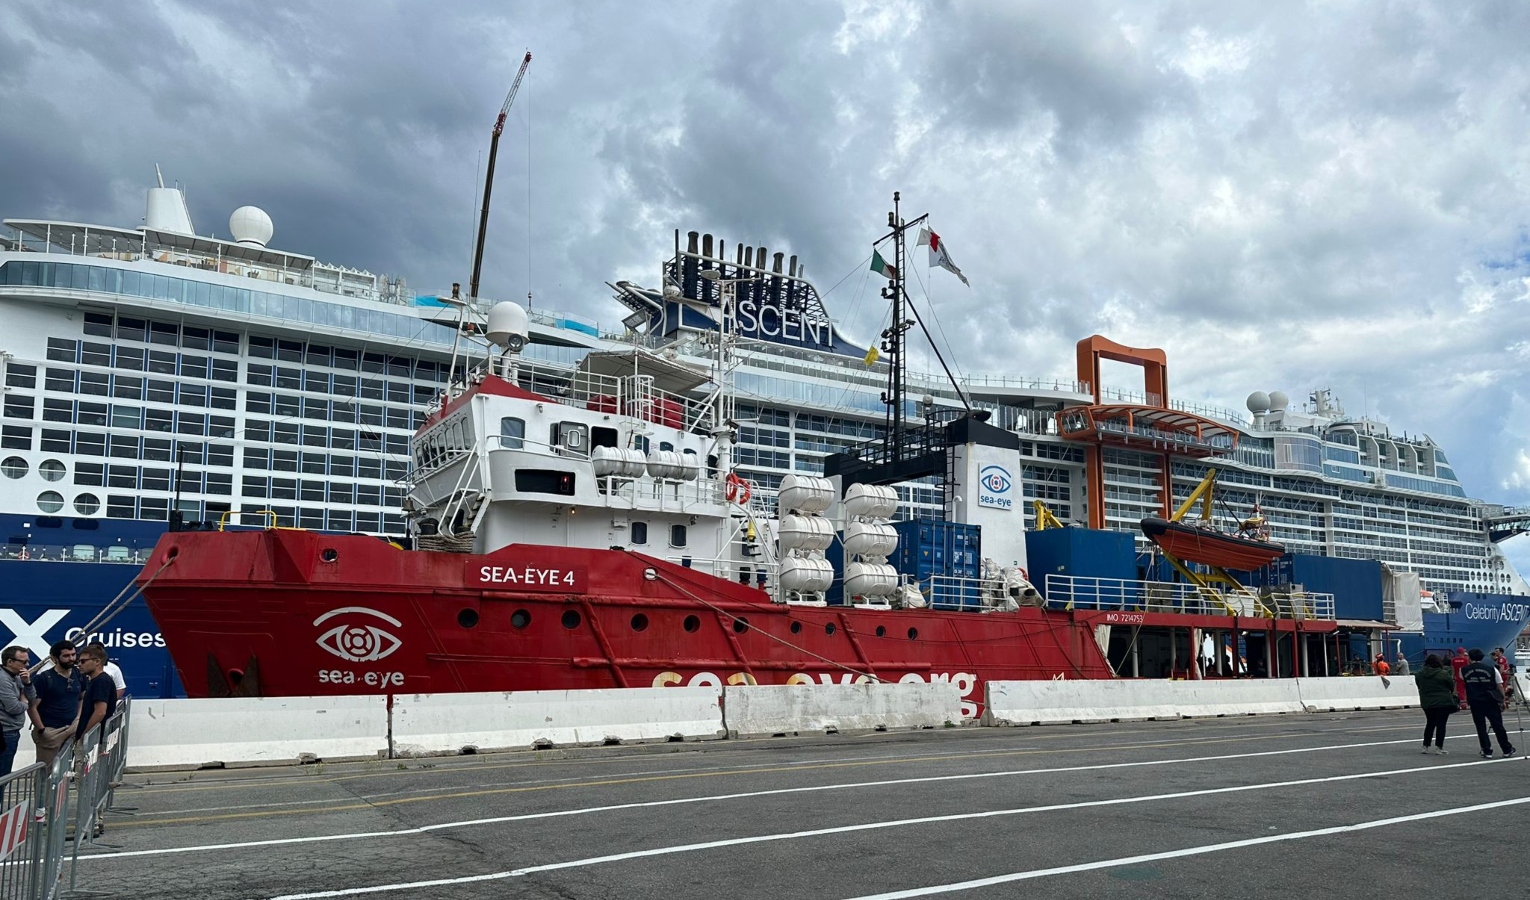 La nave 'Sea-Eye 4' a Genova con 51 migranti, una parte resterà in Liguria